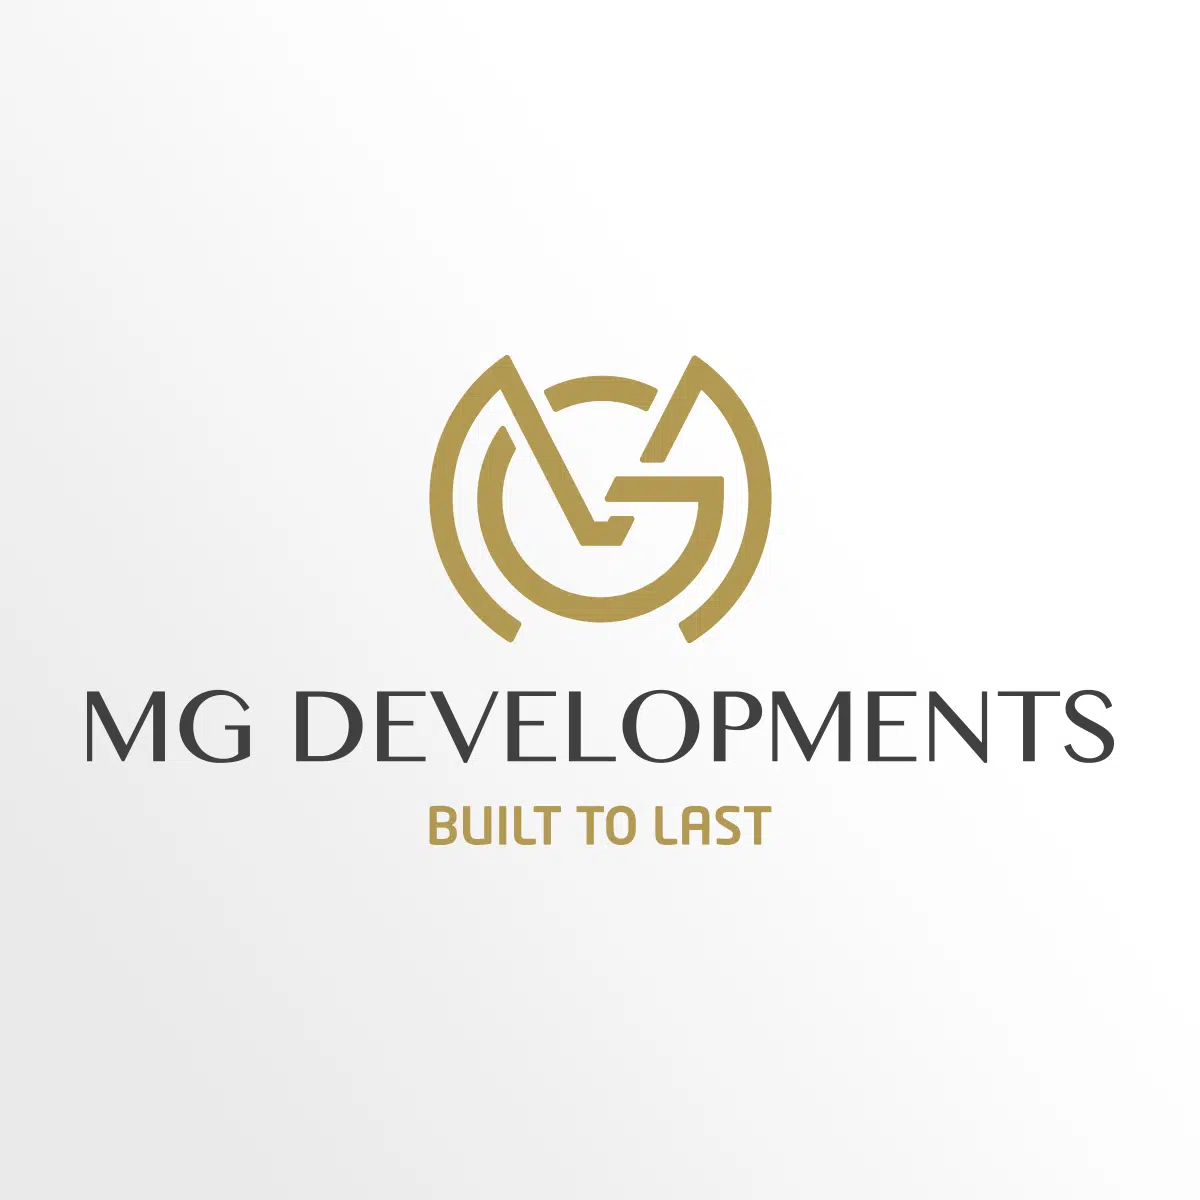 MG developments